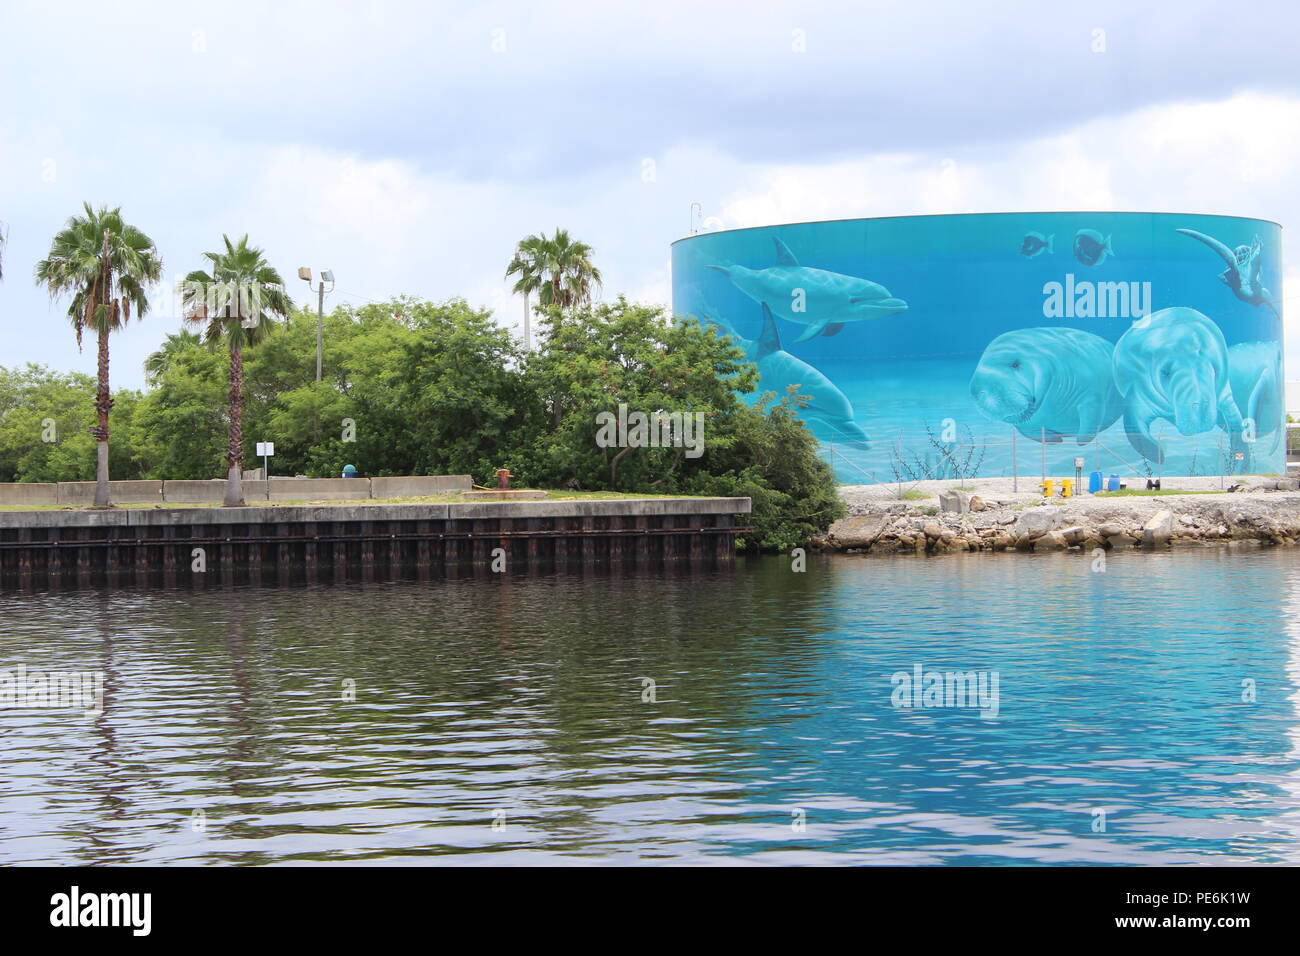 Mural pintado sobre un tanque de almacenamiento de aceite en el puerto de Tampa, Florida, EE.UU. Foto de stock